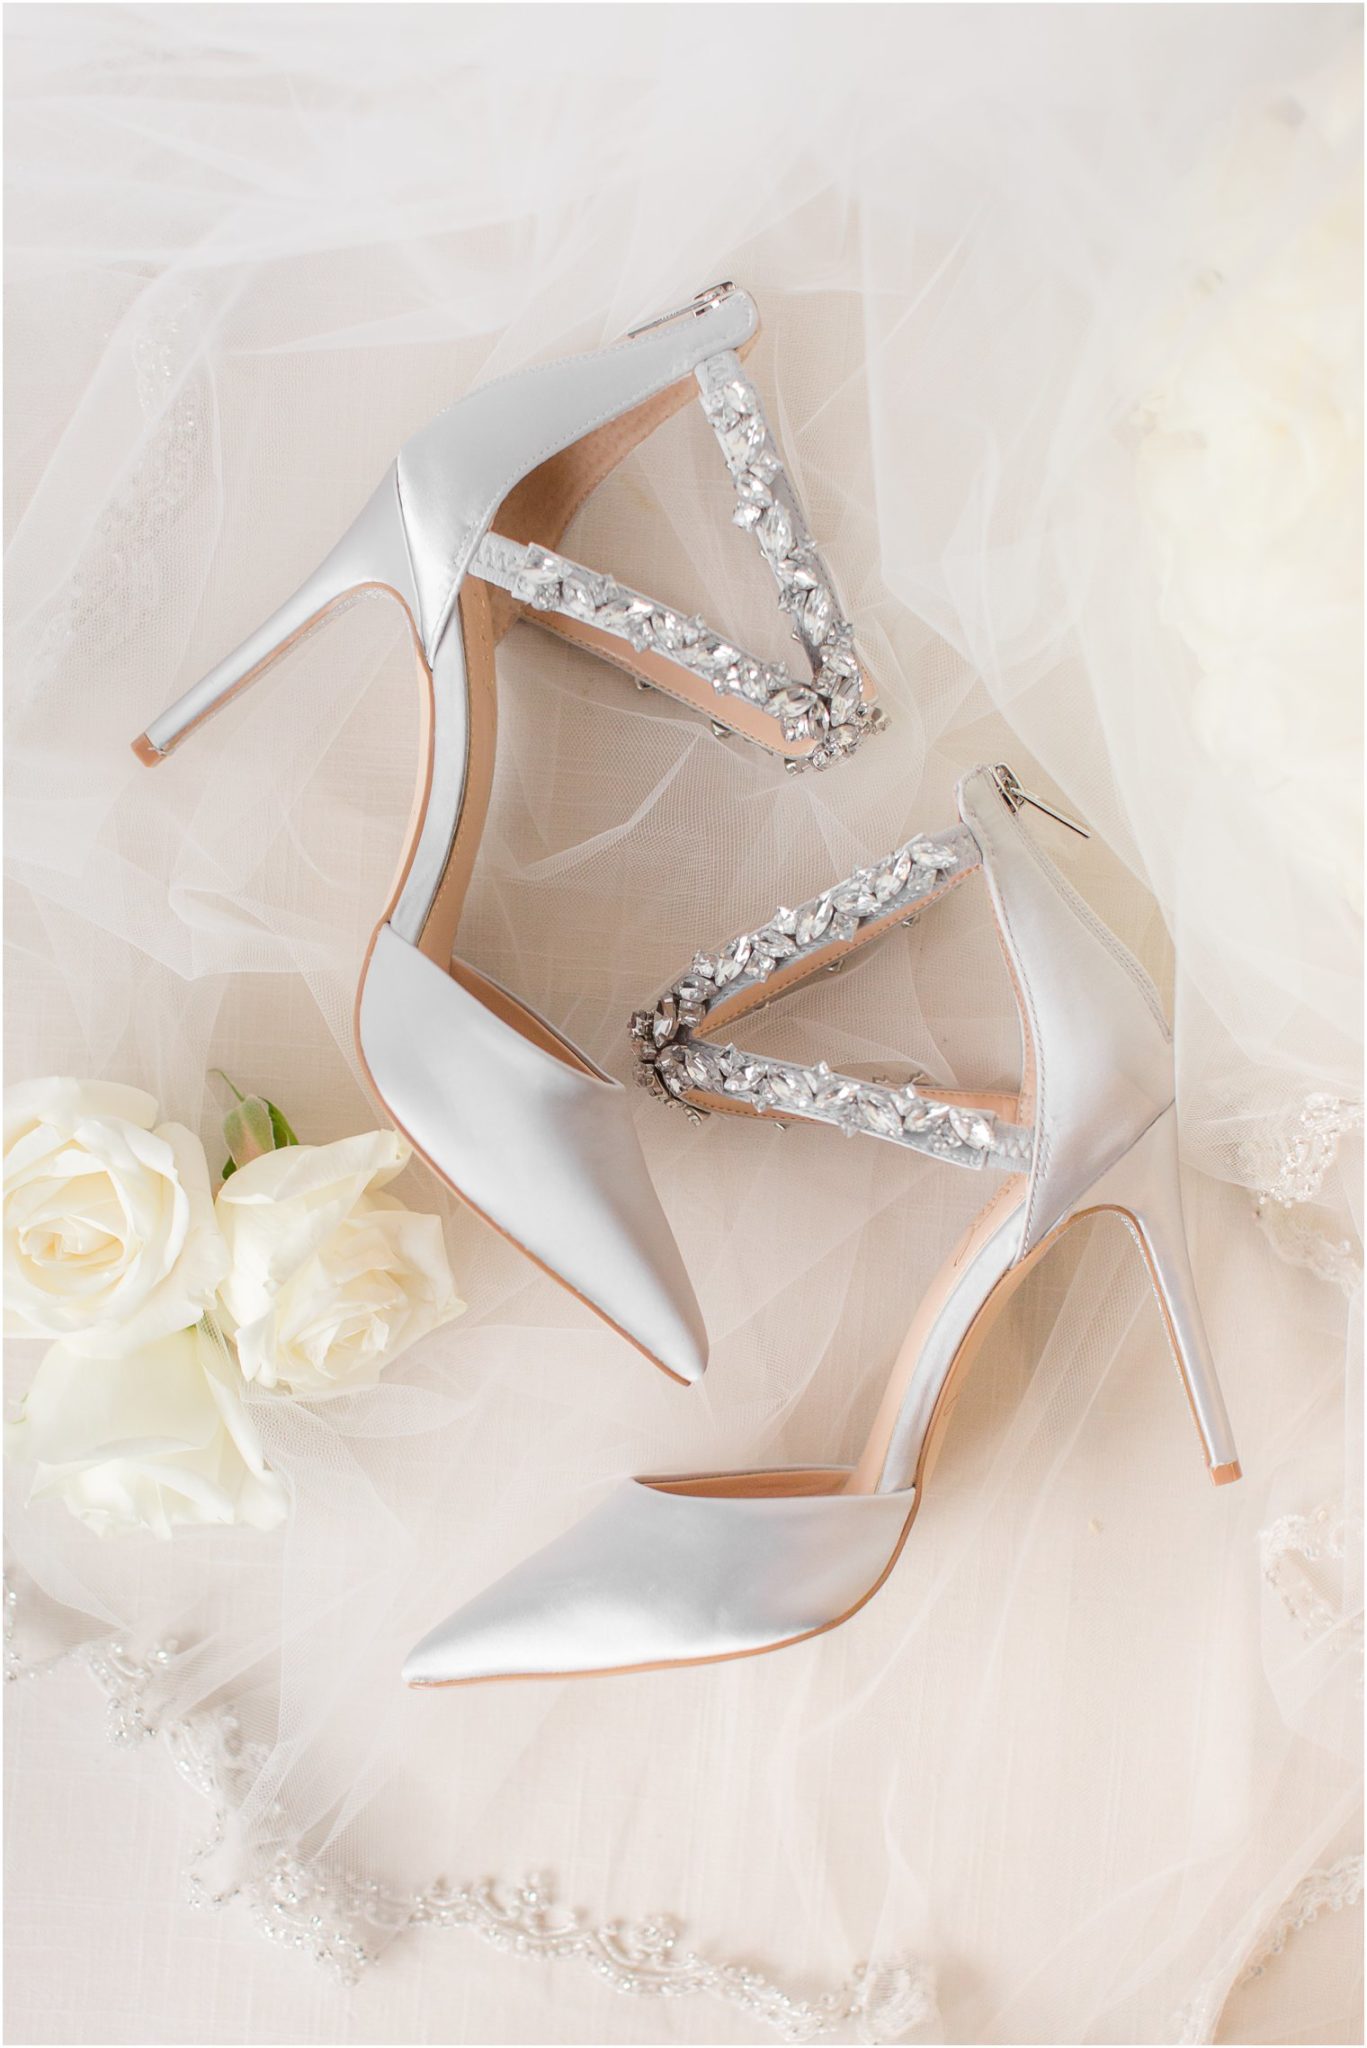 Wedding Shoe Inspiration - NJ Wedding Photographer | Idalia Photography